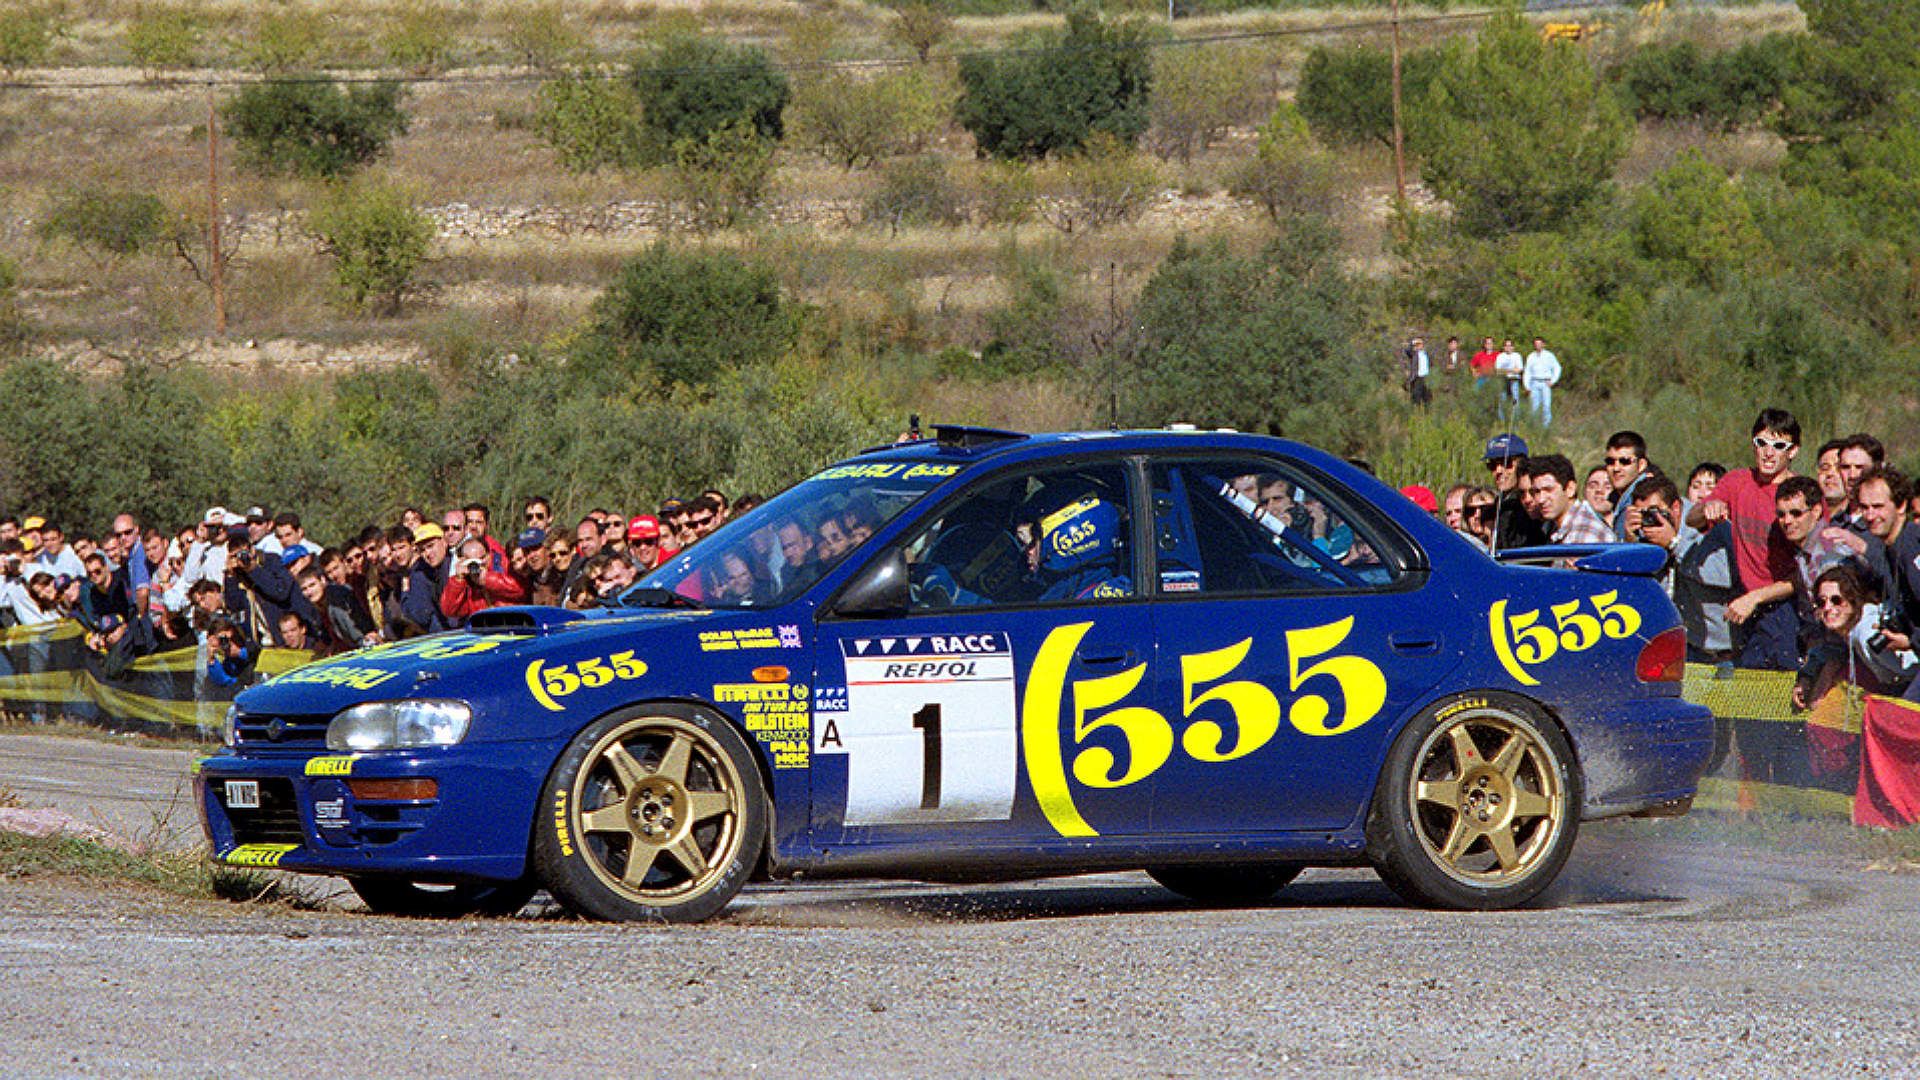 Subaru Impreza 555 de Colin McRae campeón de rally en 1995